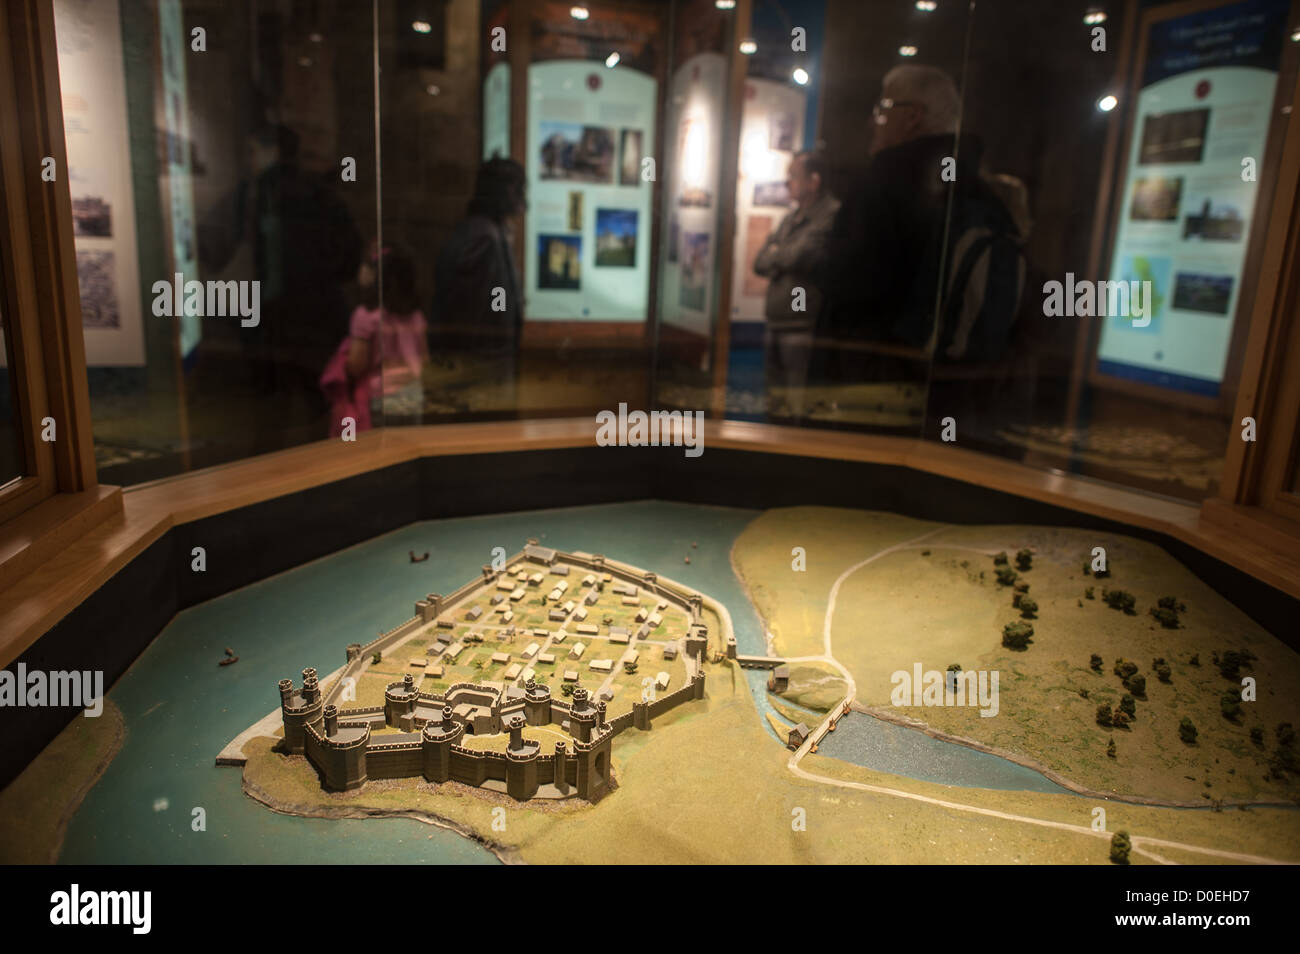 CAERNARFON, Pays de Galles - un modèle décrivant comment le château de Caernarfon aurait cherché à son apogée dans le cadre d'une exposition sur le château, avec les touristes dans l'arrière-plan. Banque D'Images